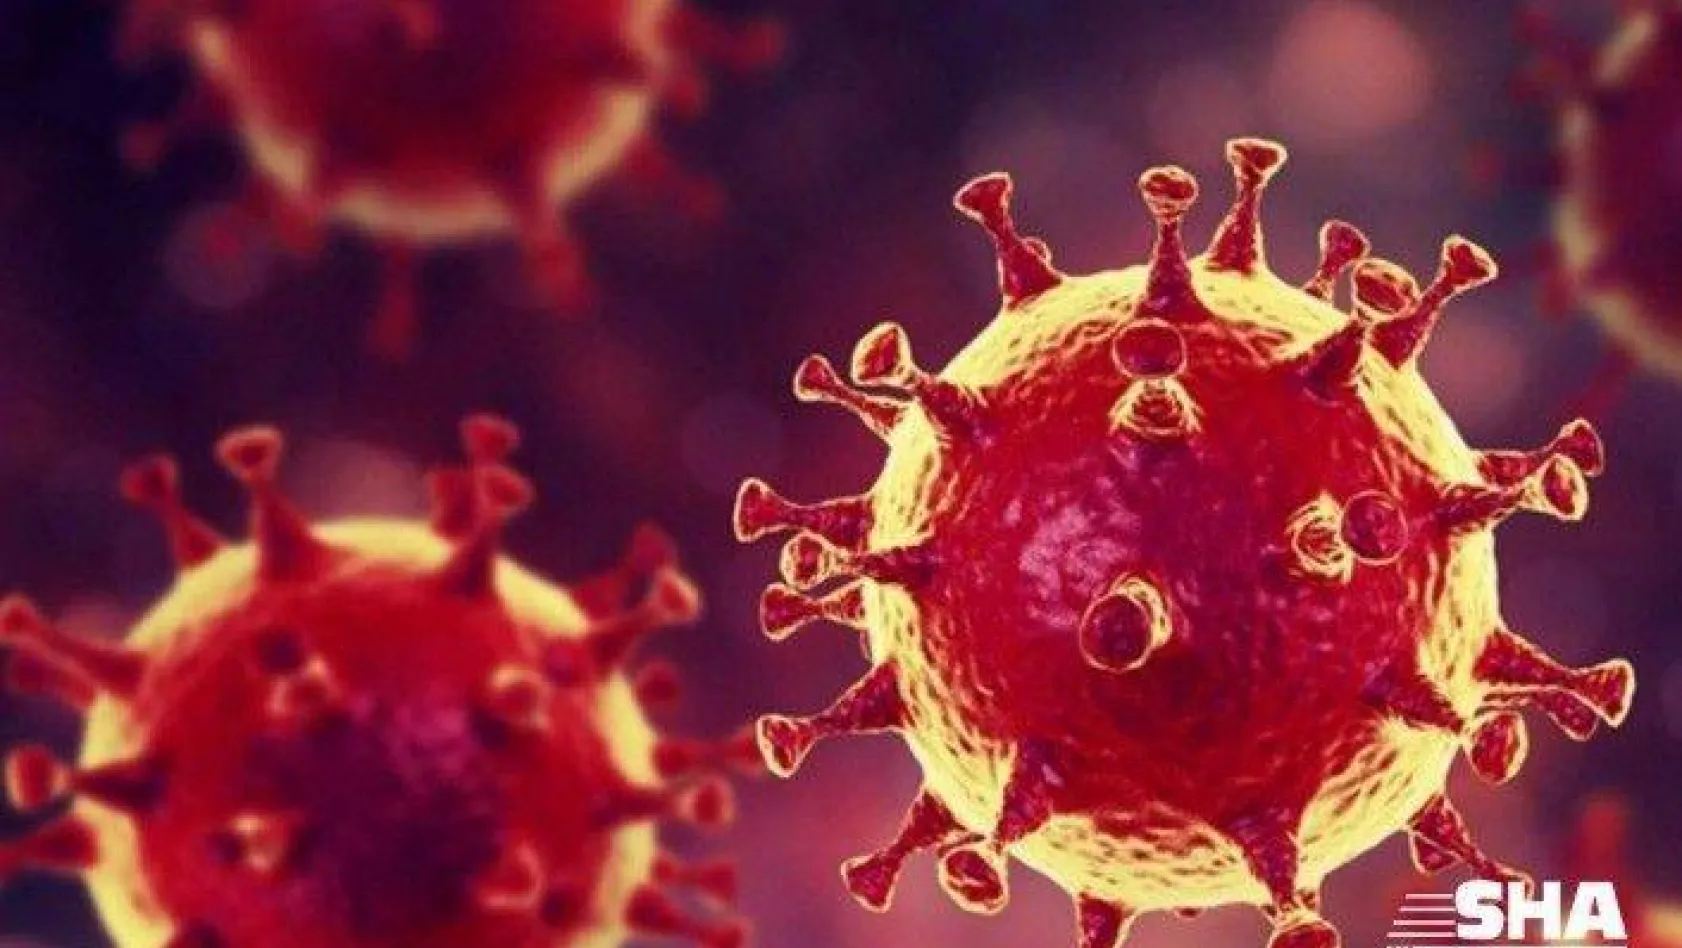 Koronavirüs hakkında çıkan haber sayısı 21 milyonu aştı